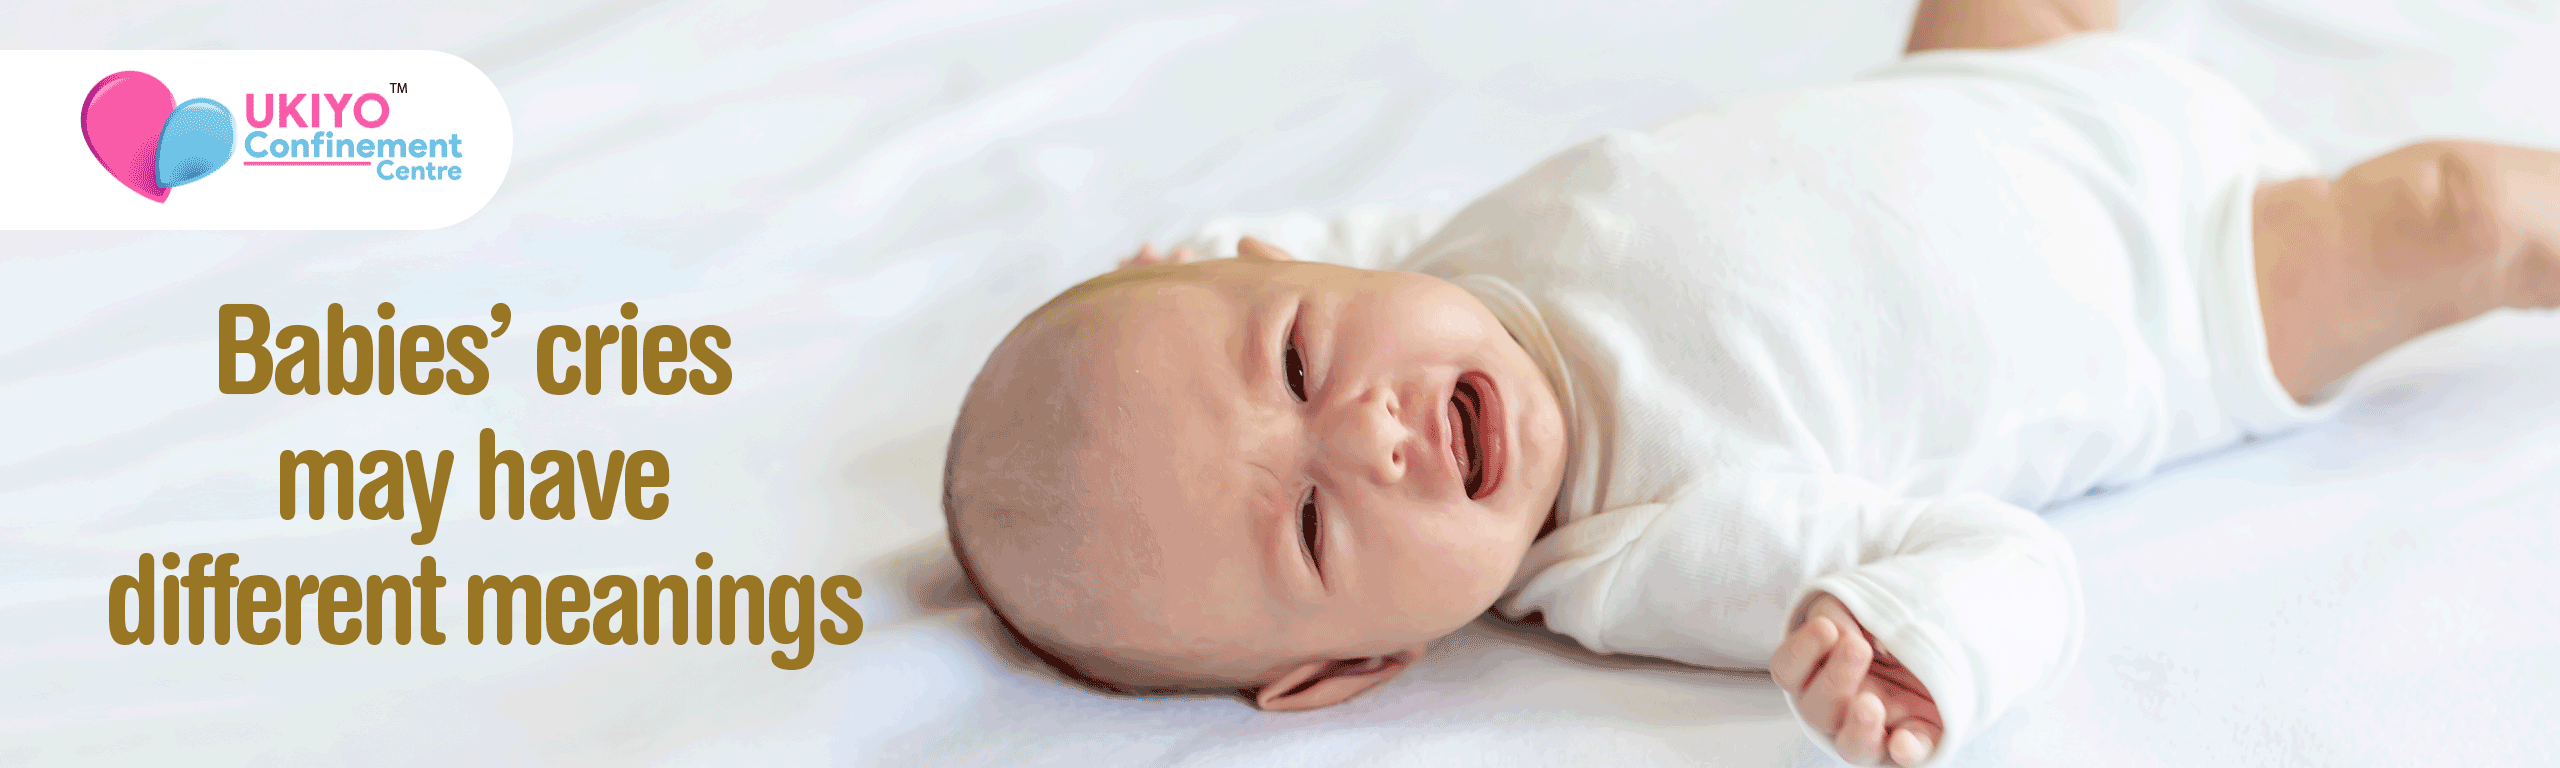 Babies cries article desktop en